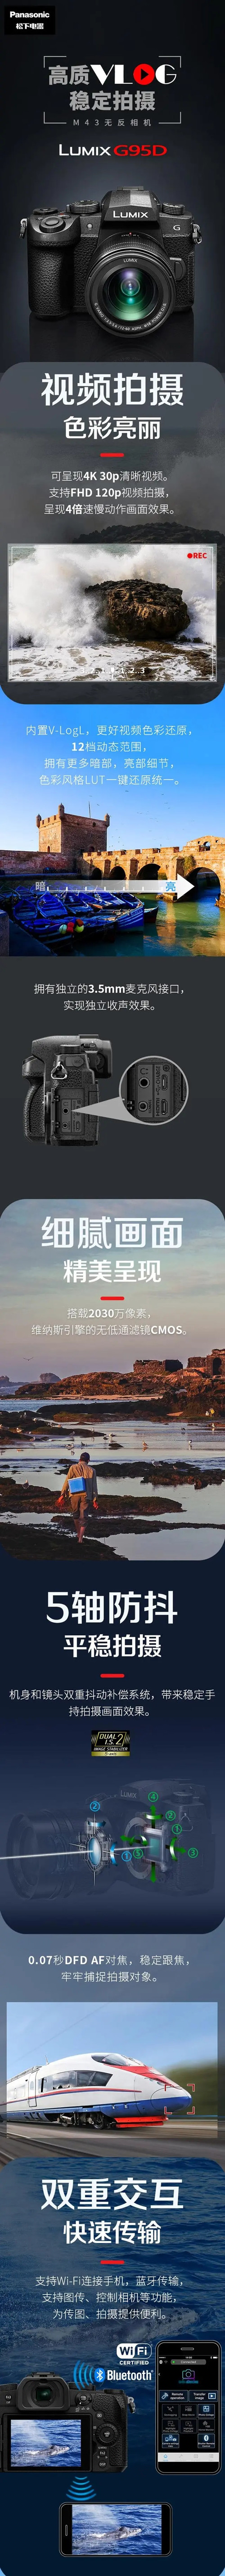 松下推出新款 G95D 相机 配备2030万像素CMOS